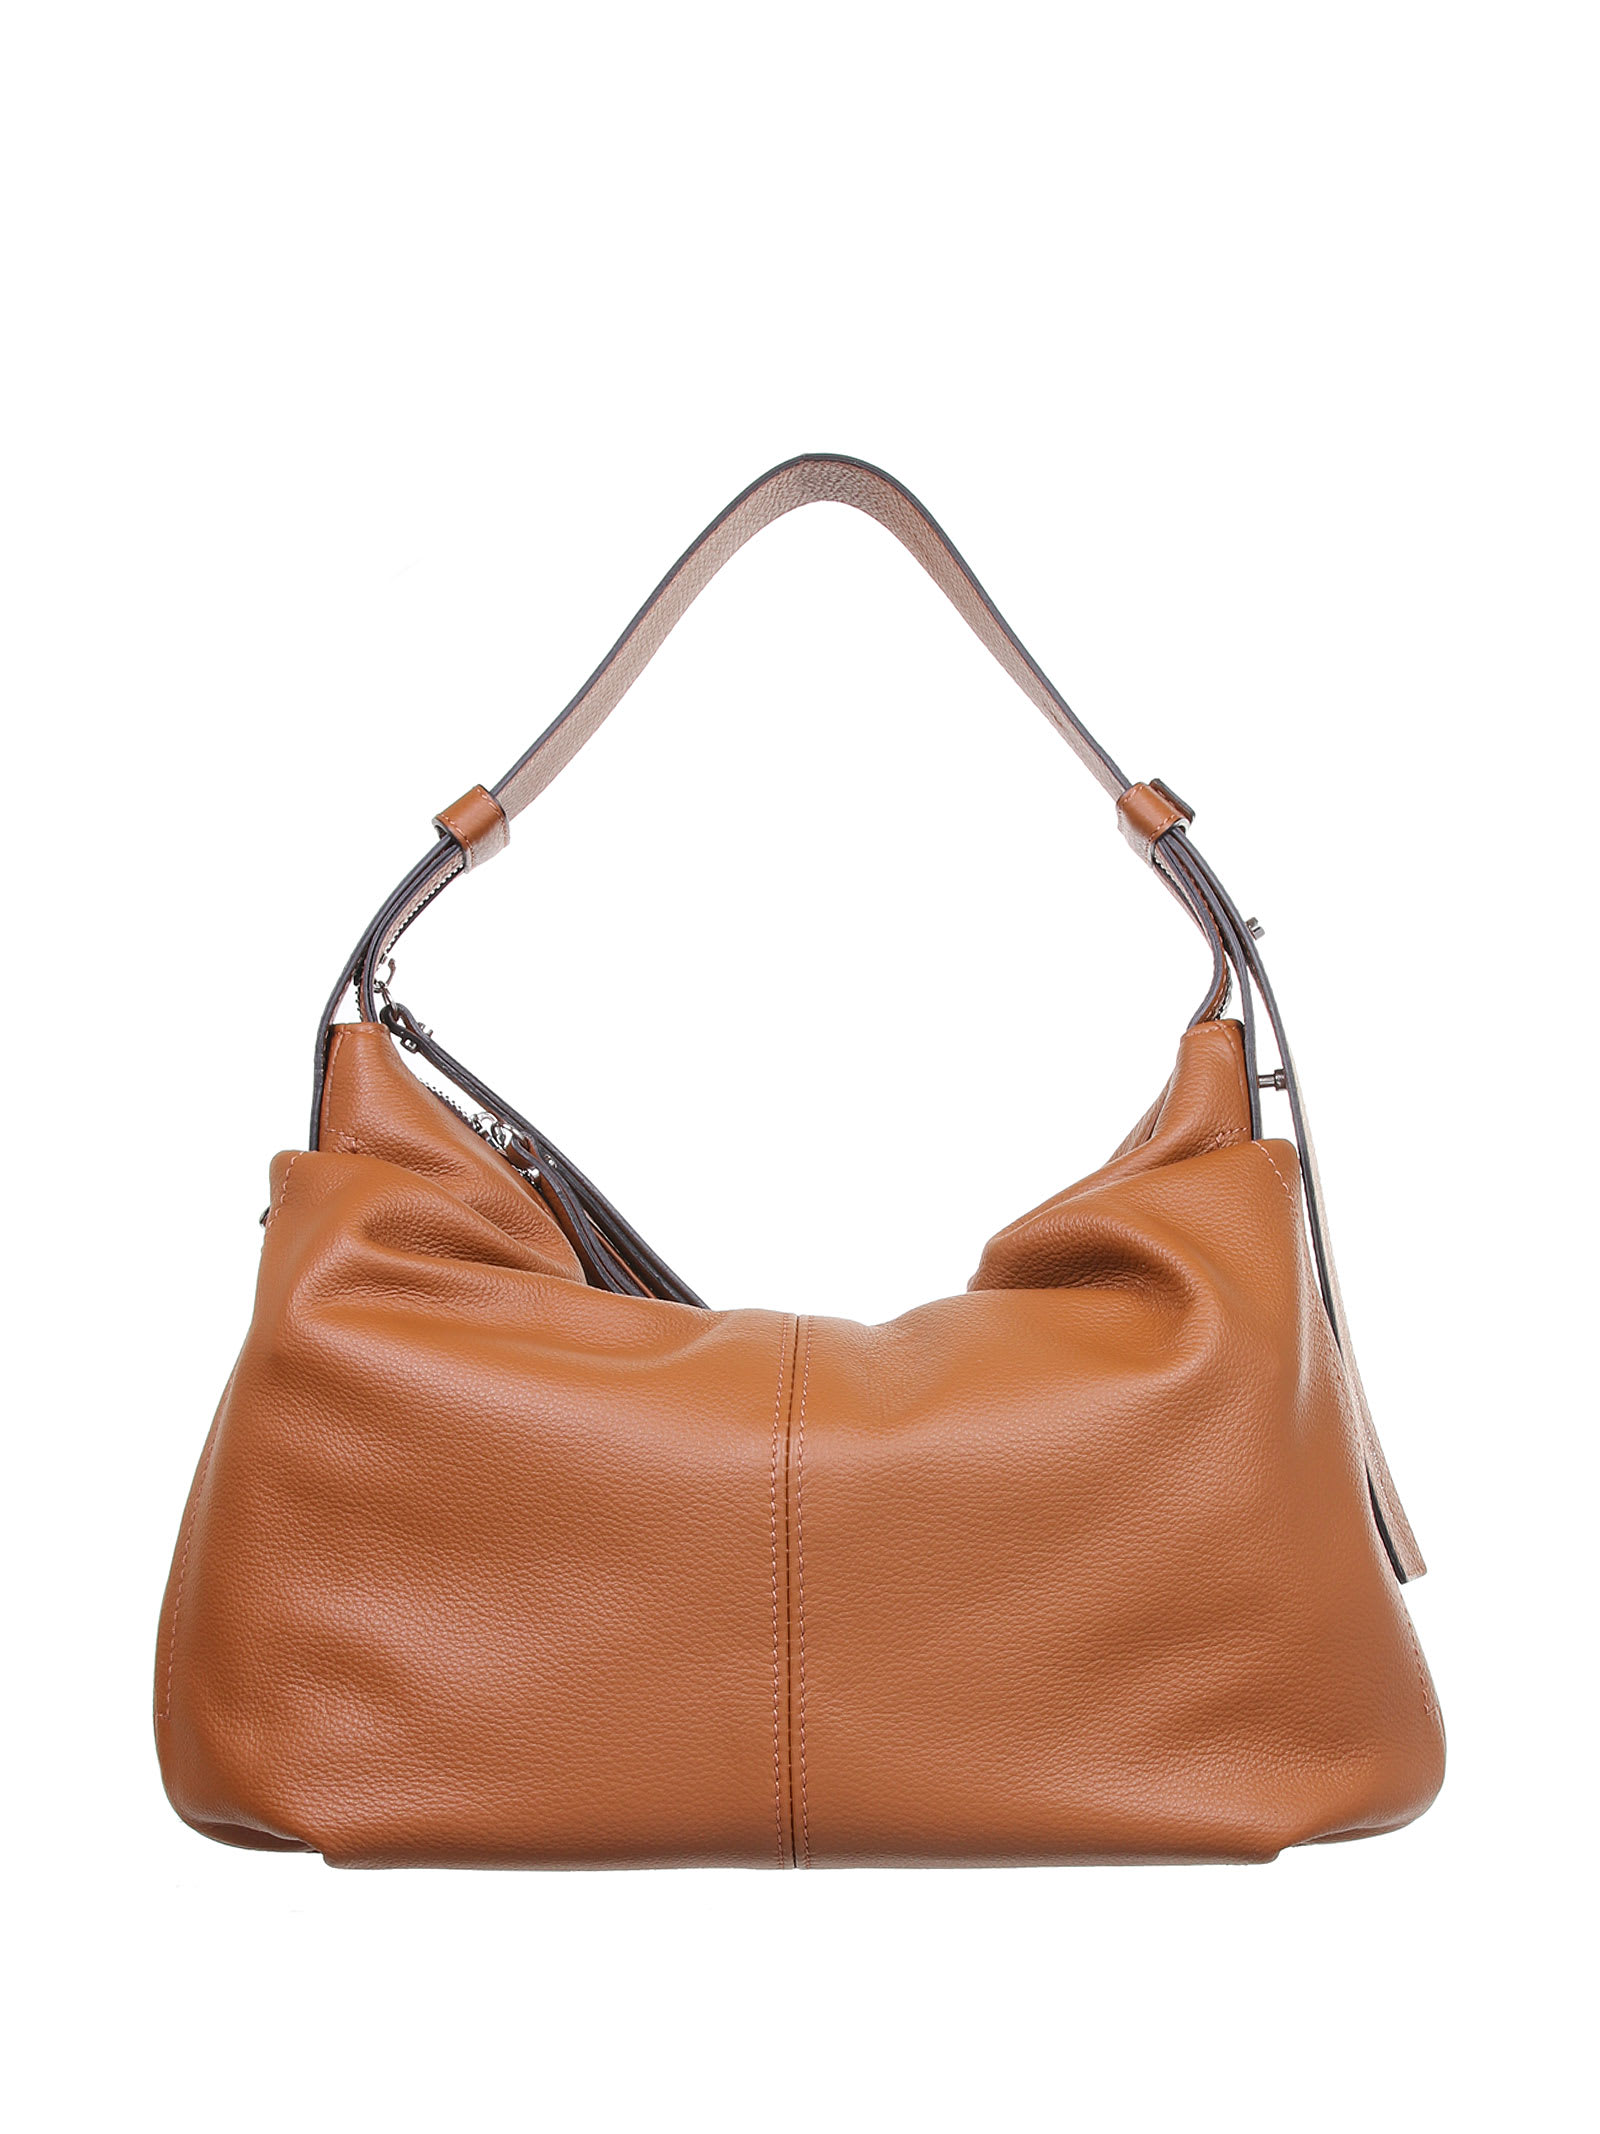 Gianni Chiarini Erica Tan Leather Bag